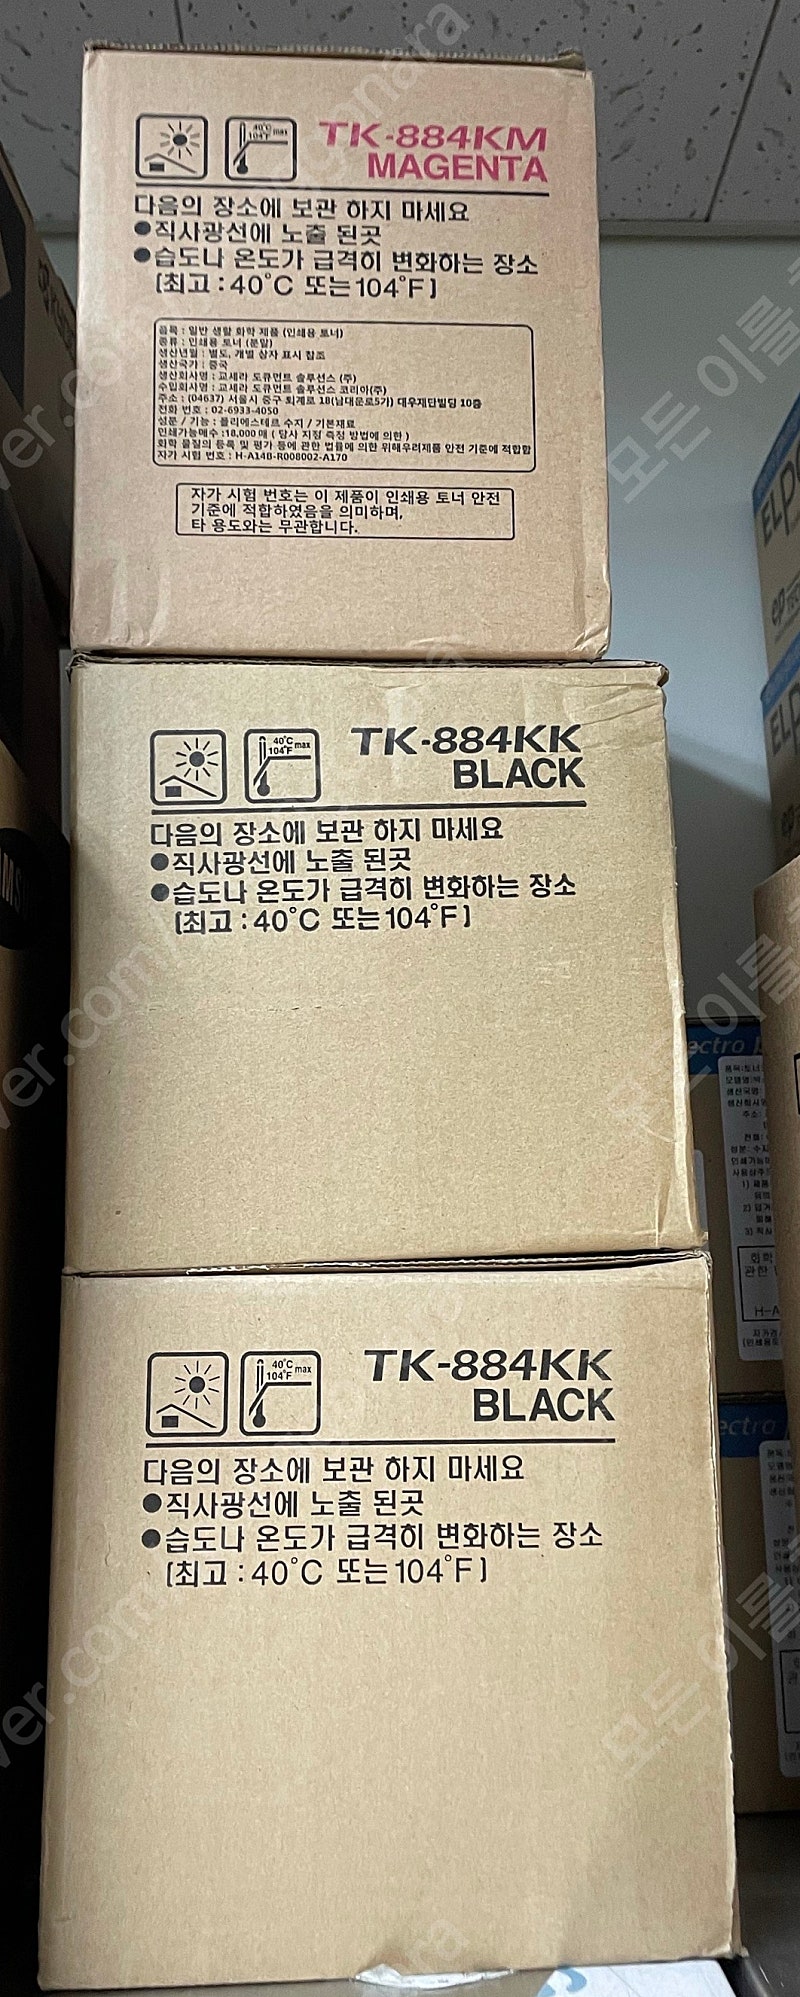 교세라 FS-8500 컬러레이저 A3 프린터 토너 TK-884KM, TK_884KK 판매합니다_판매되면 지웁니다2022년3월16일